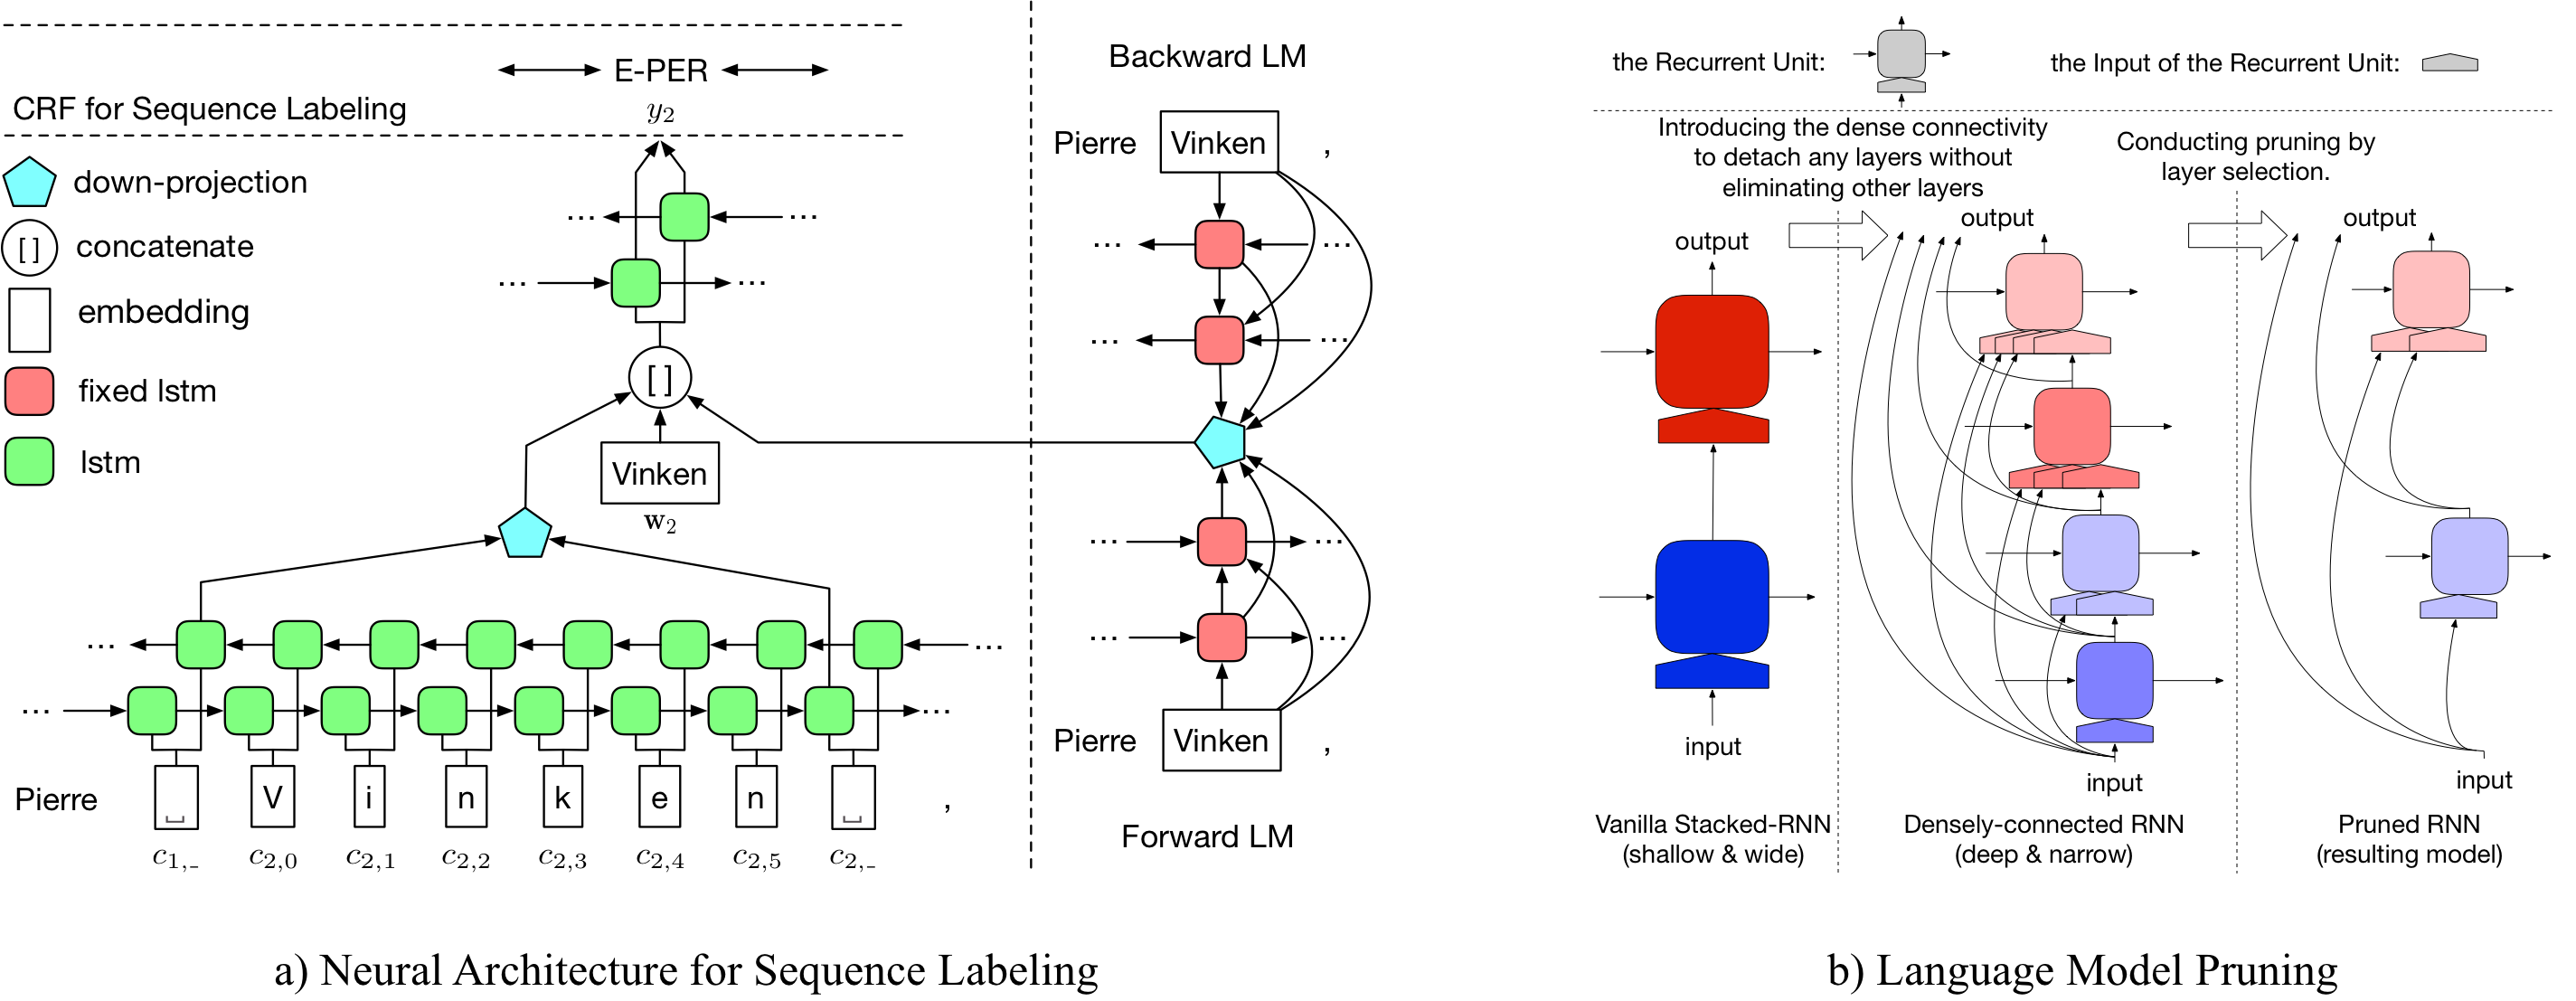 LD-Net Framework